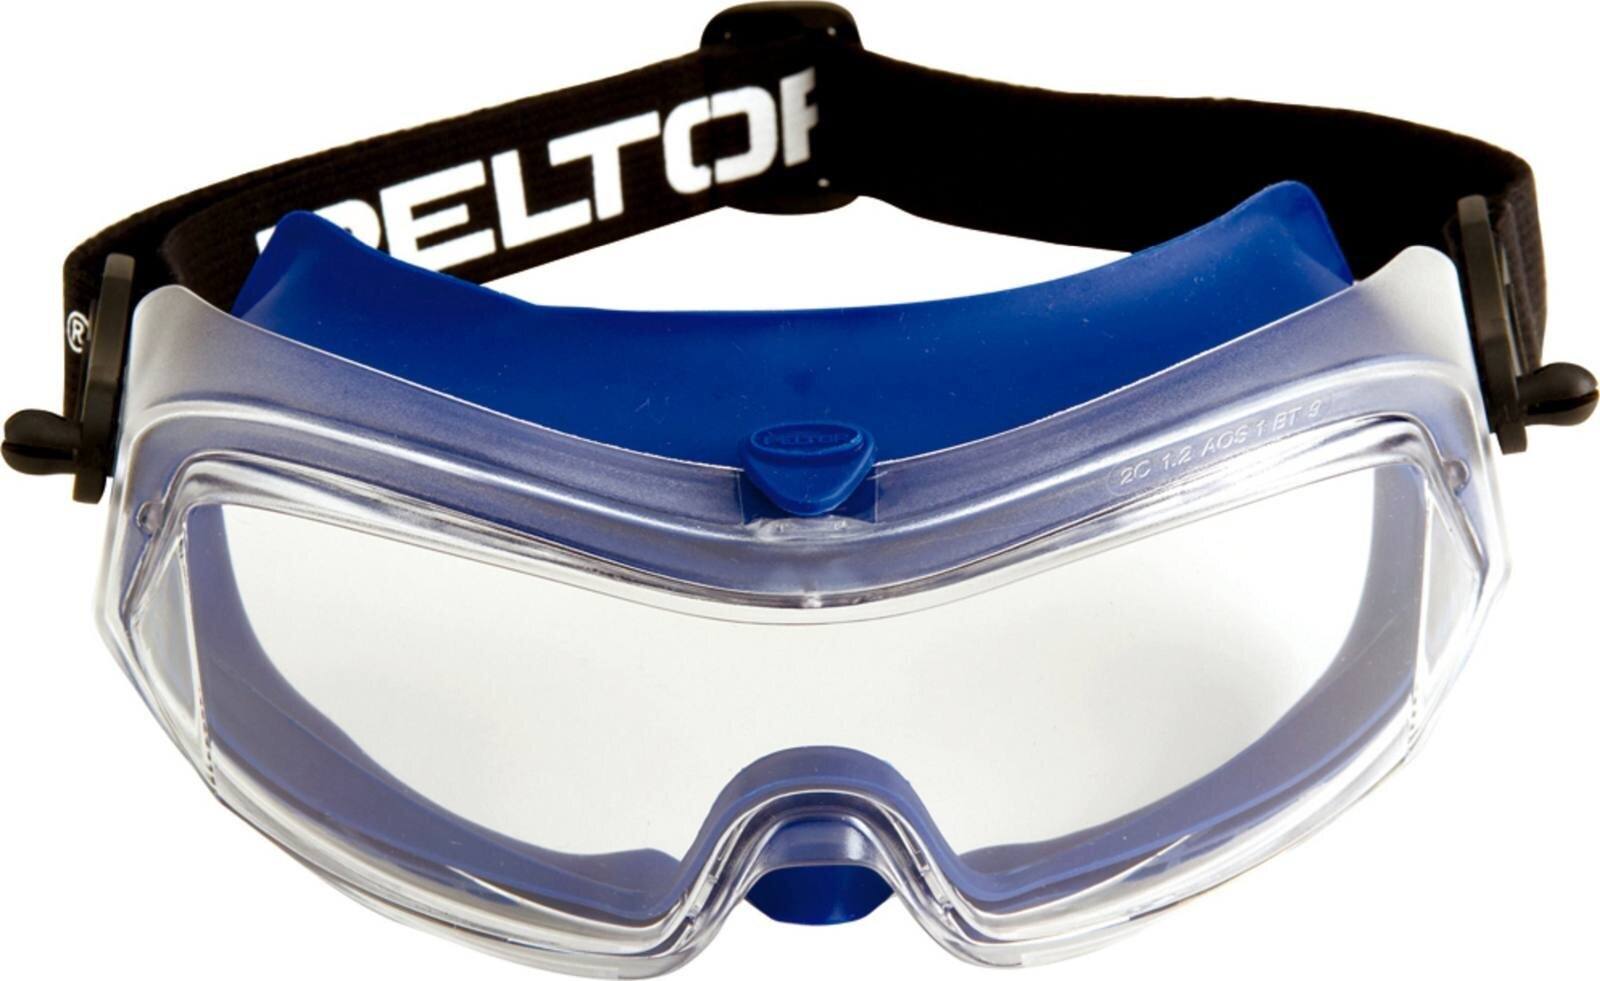 Occhiali di sicurezza 3M Modul-R DX/UV, PC, trasparenti, leggeri, profilo sottileVentilazione diretta, archetto in nylon, incluso sacchetto in microfibra ModulR